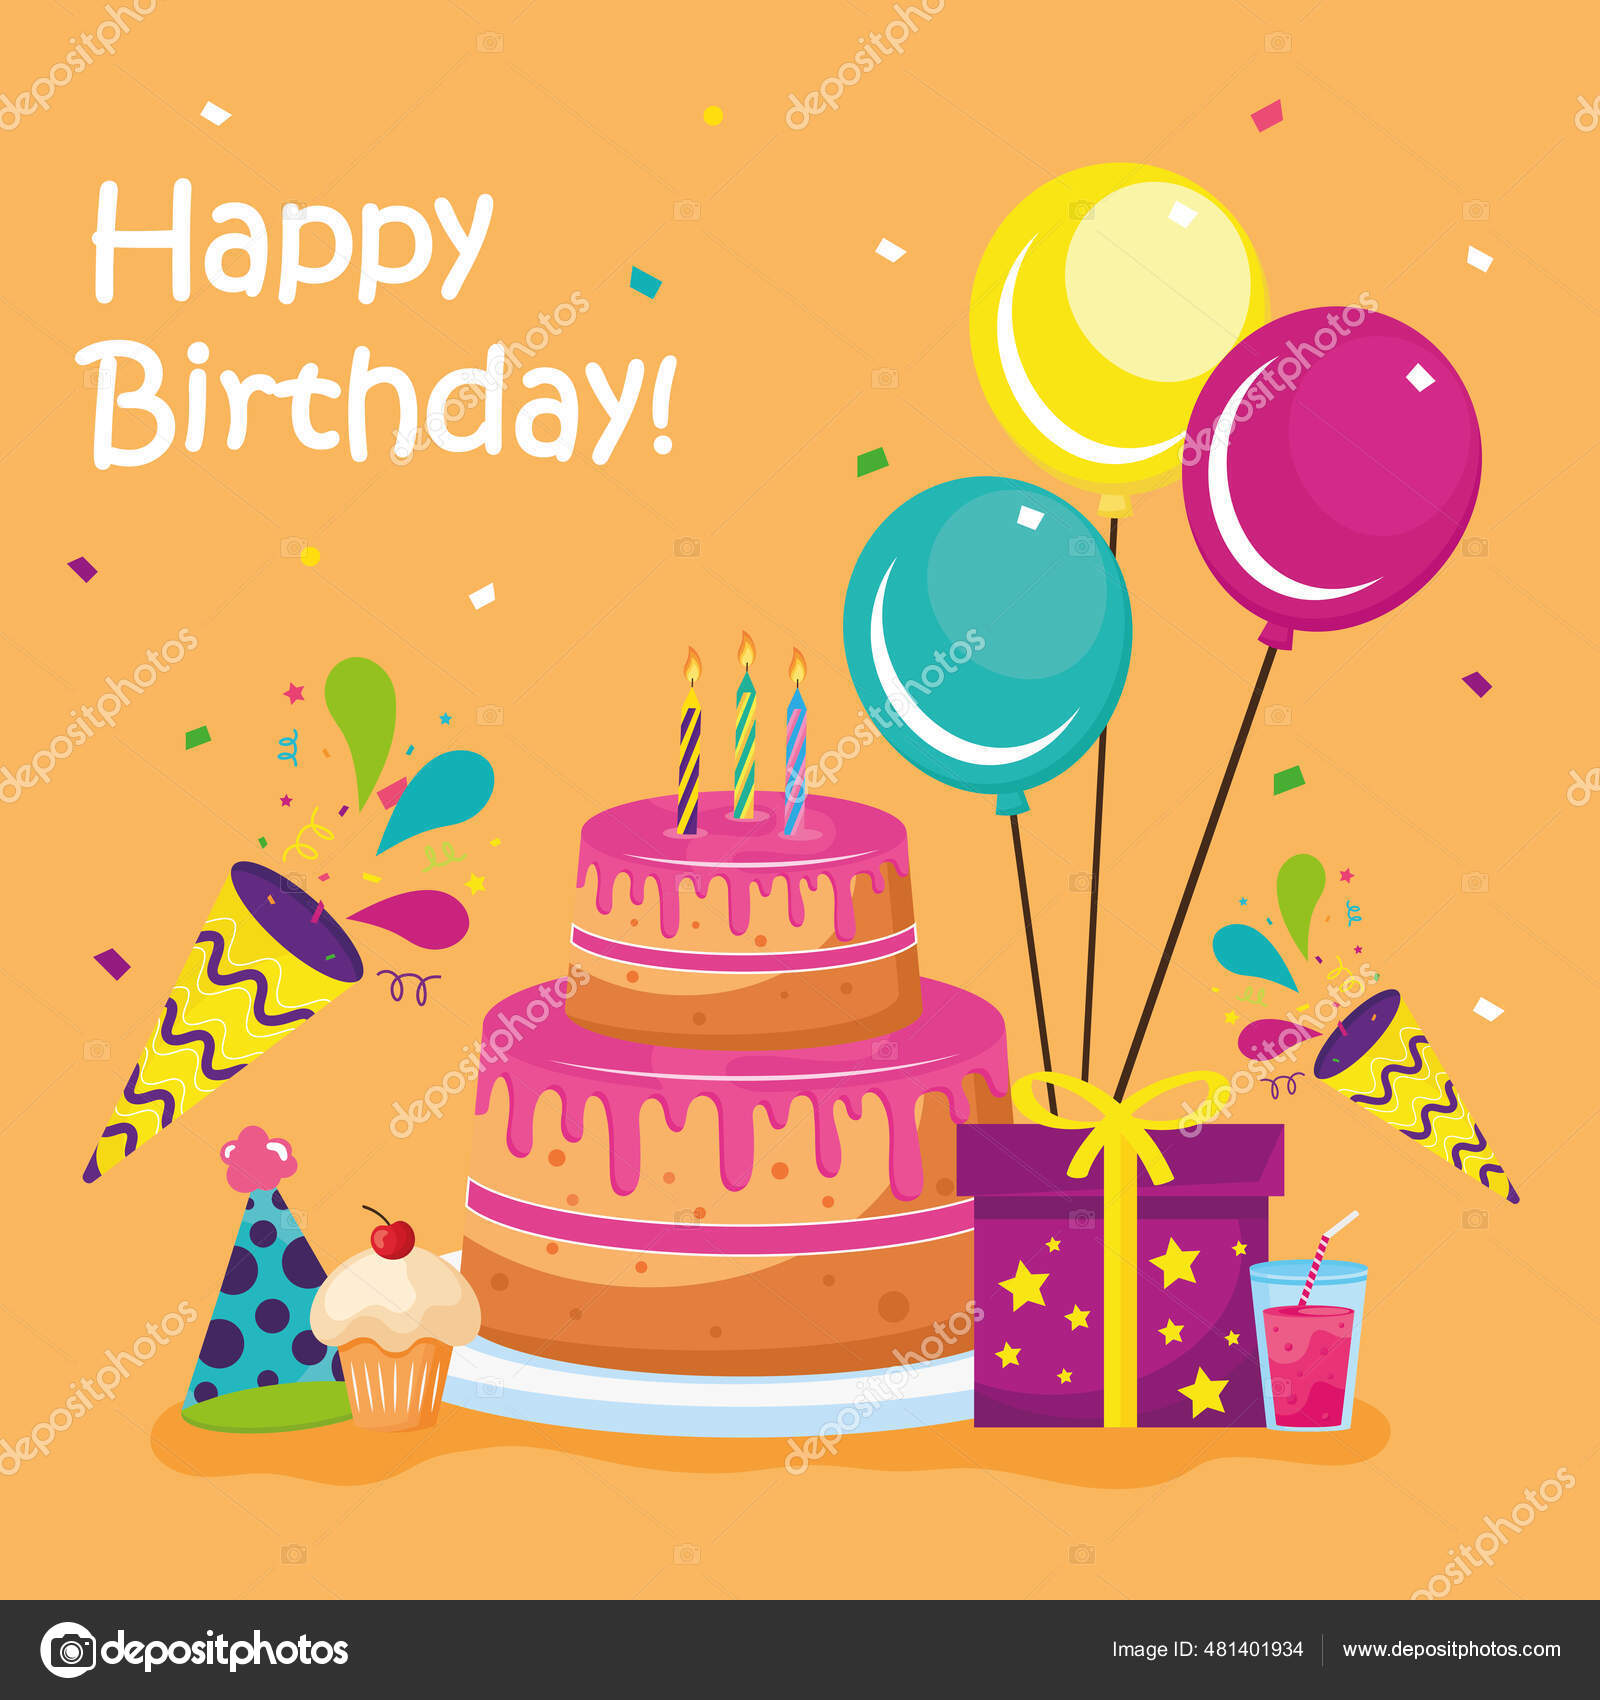 Happy birthday cake with icon set Stock Illustration by ©yupiramos ...